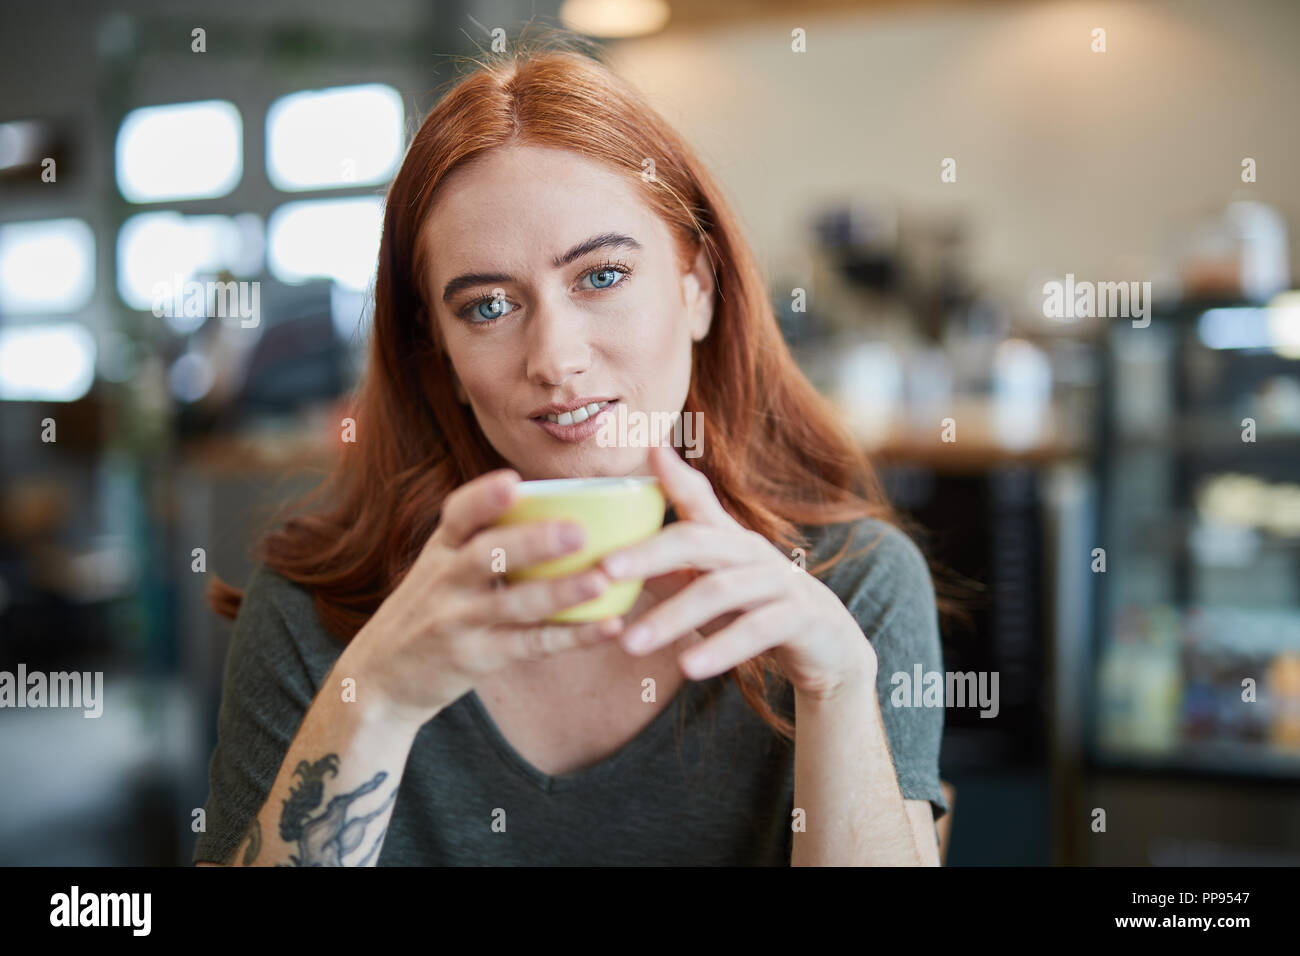 Une seule femelle, est assis dans un café de la ville avec une boisson chaude dans une tasse, looking at camera Banque D'Images